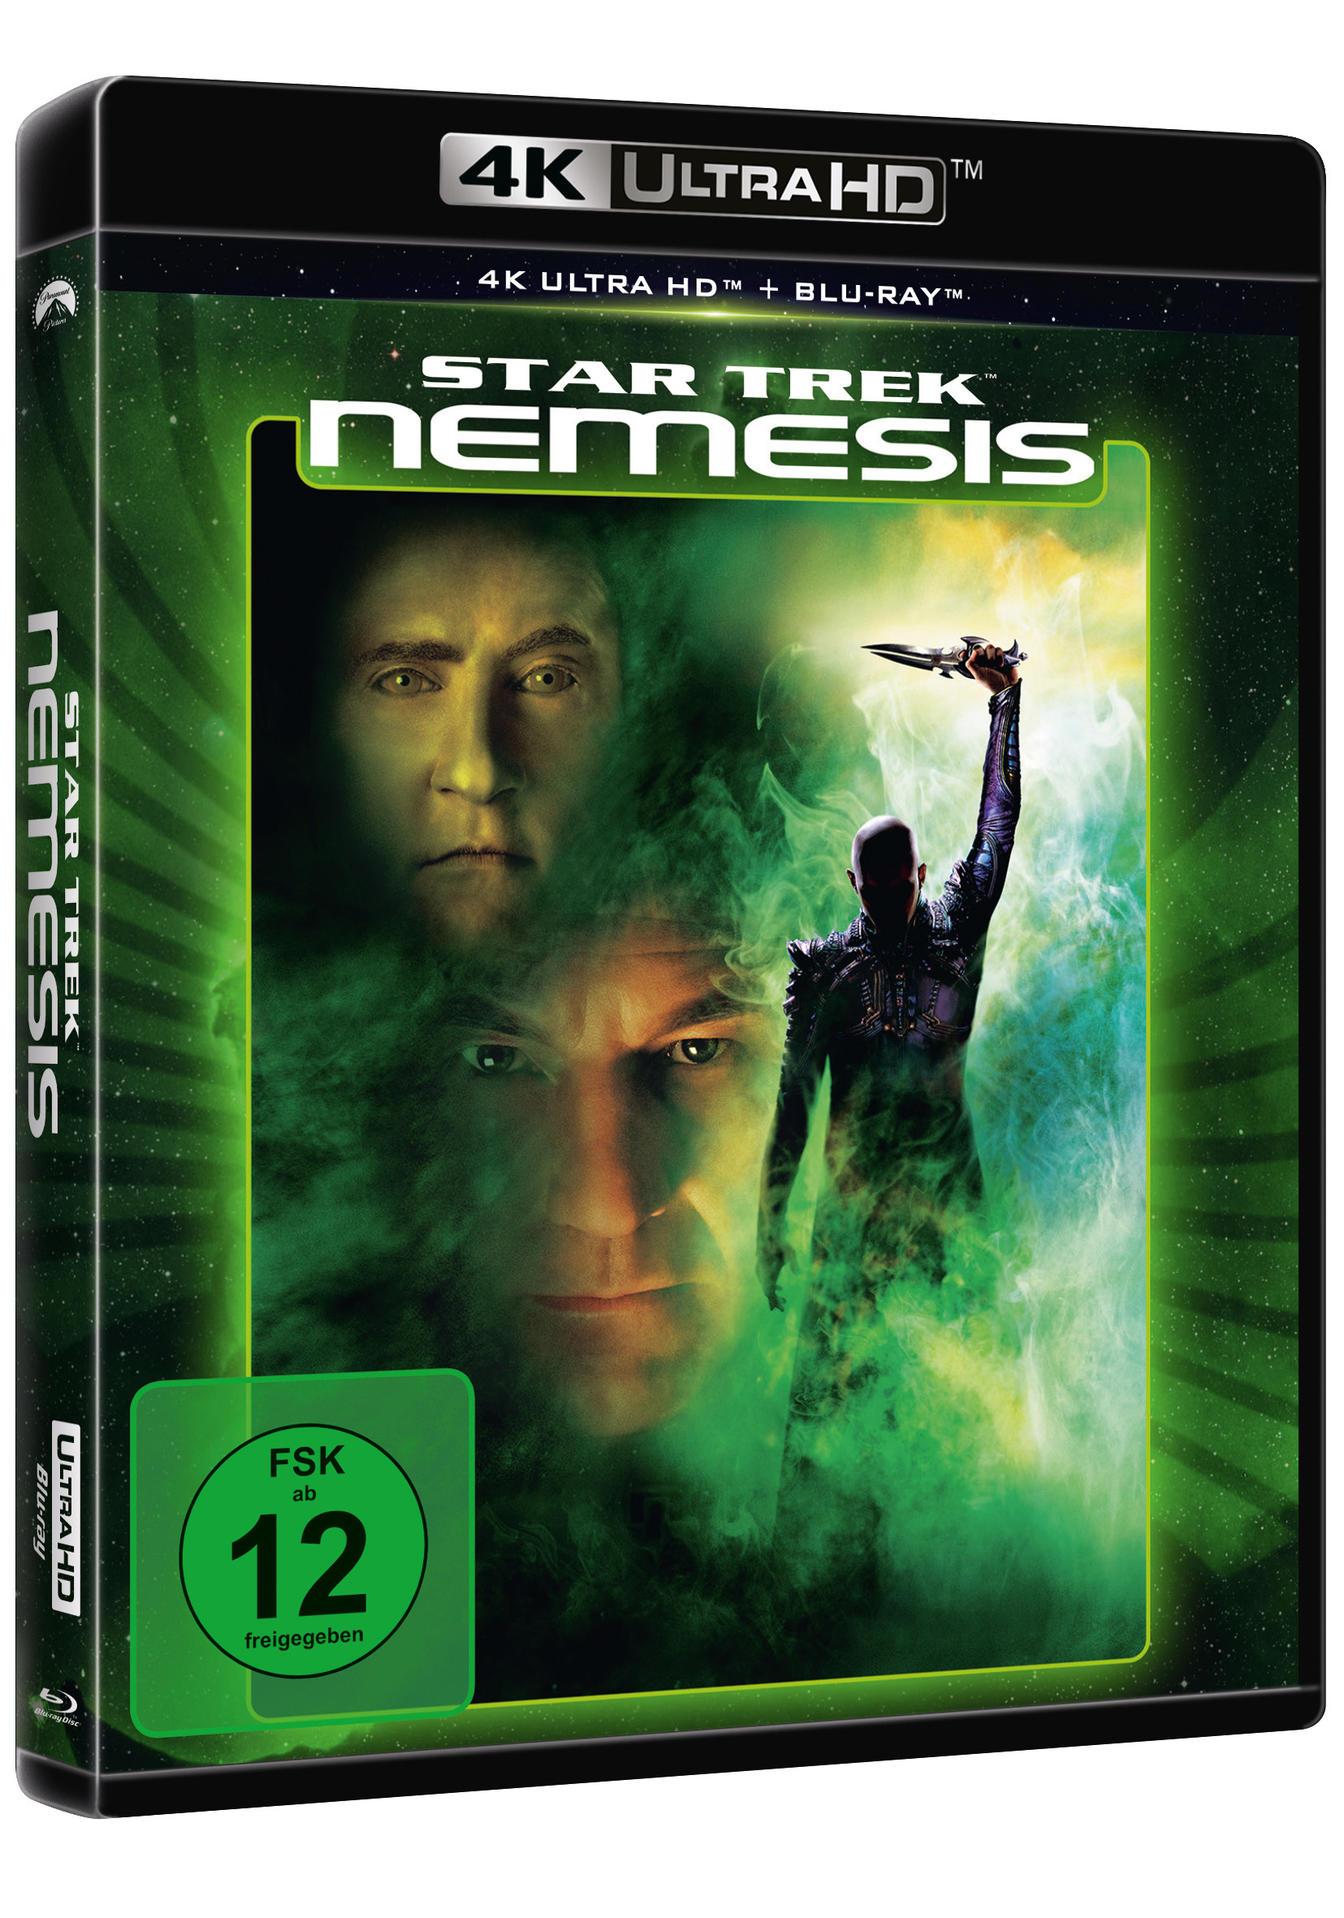 Nemesis 4K HD Ultra Blu-ray Blu-ray - Star Trek + X